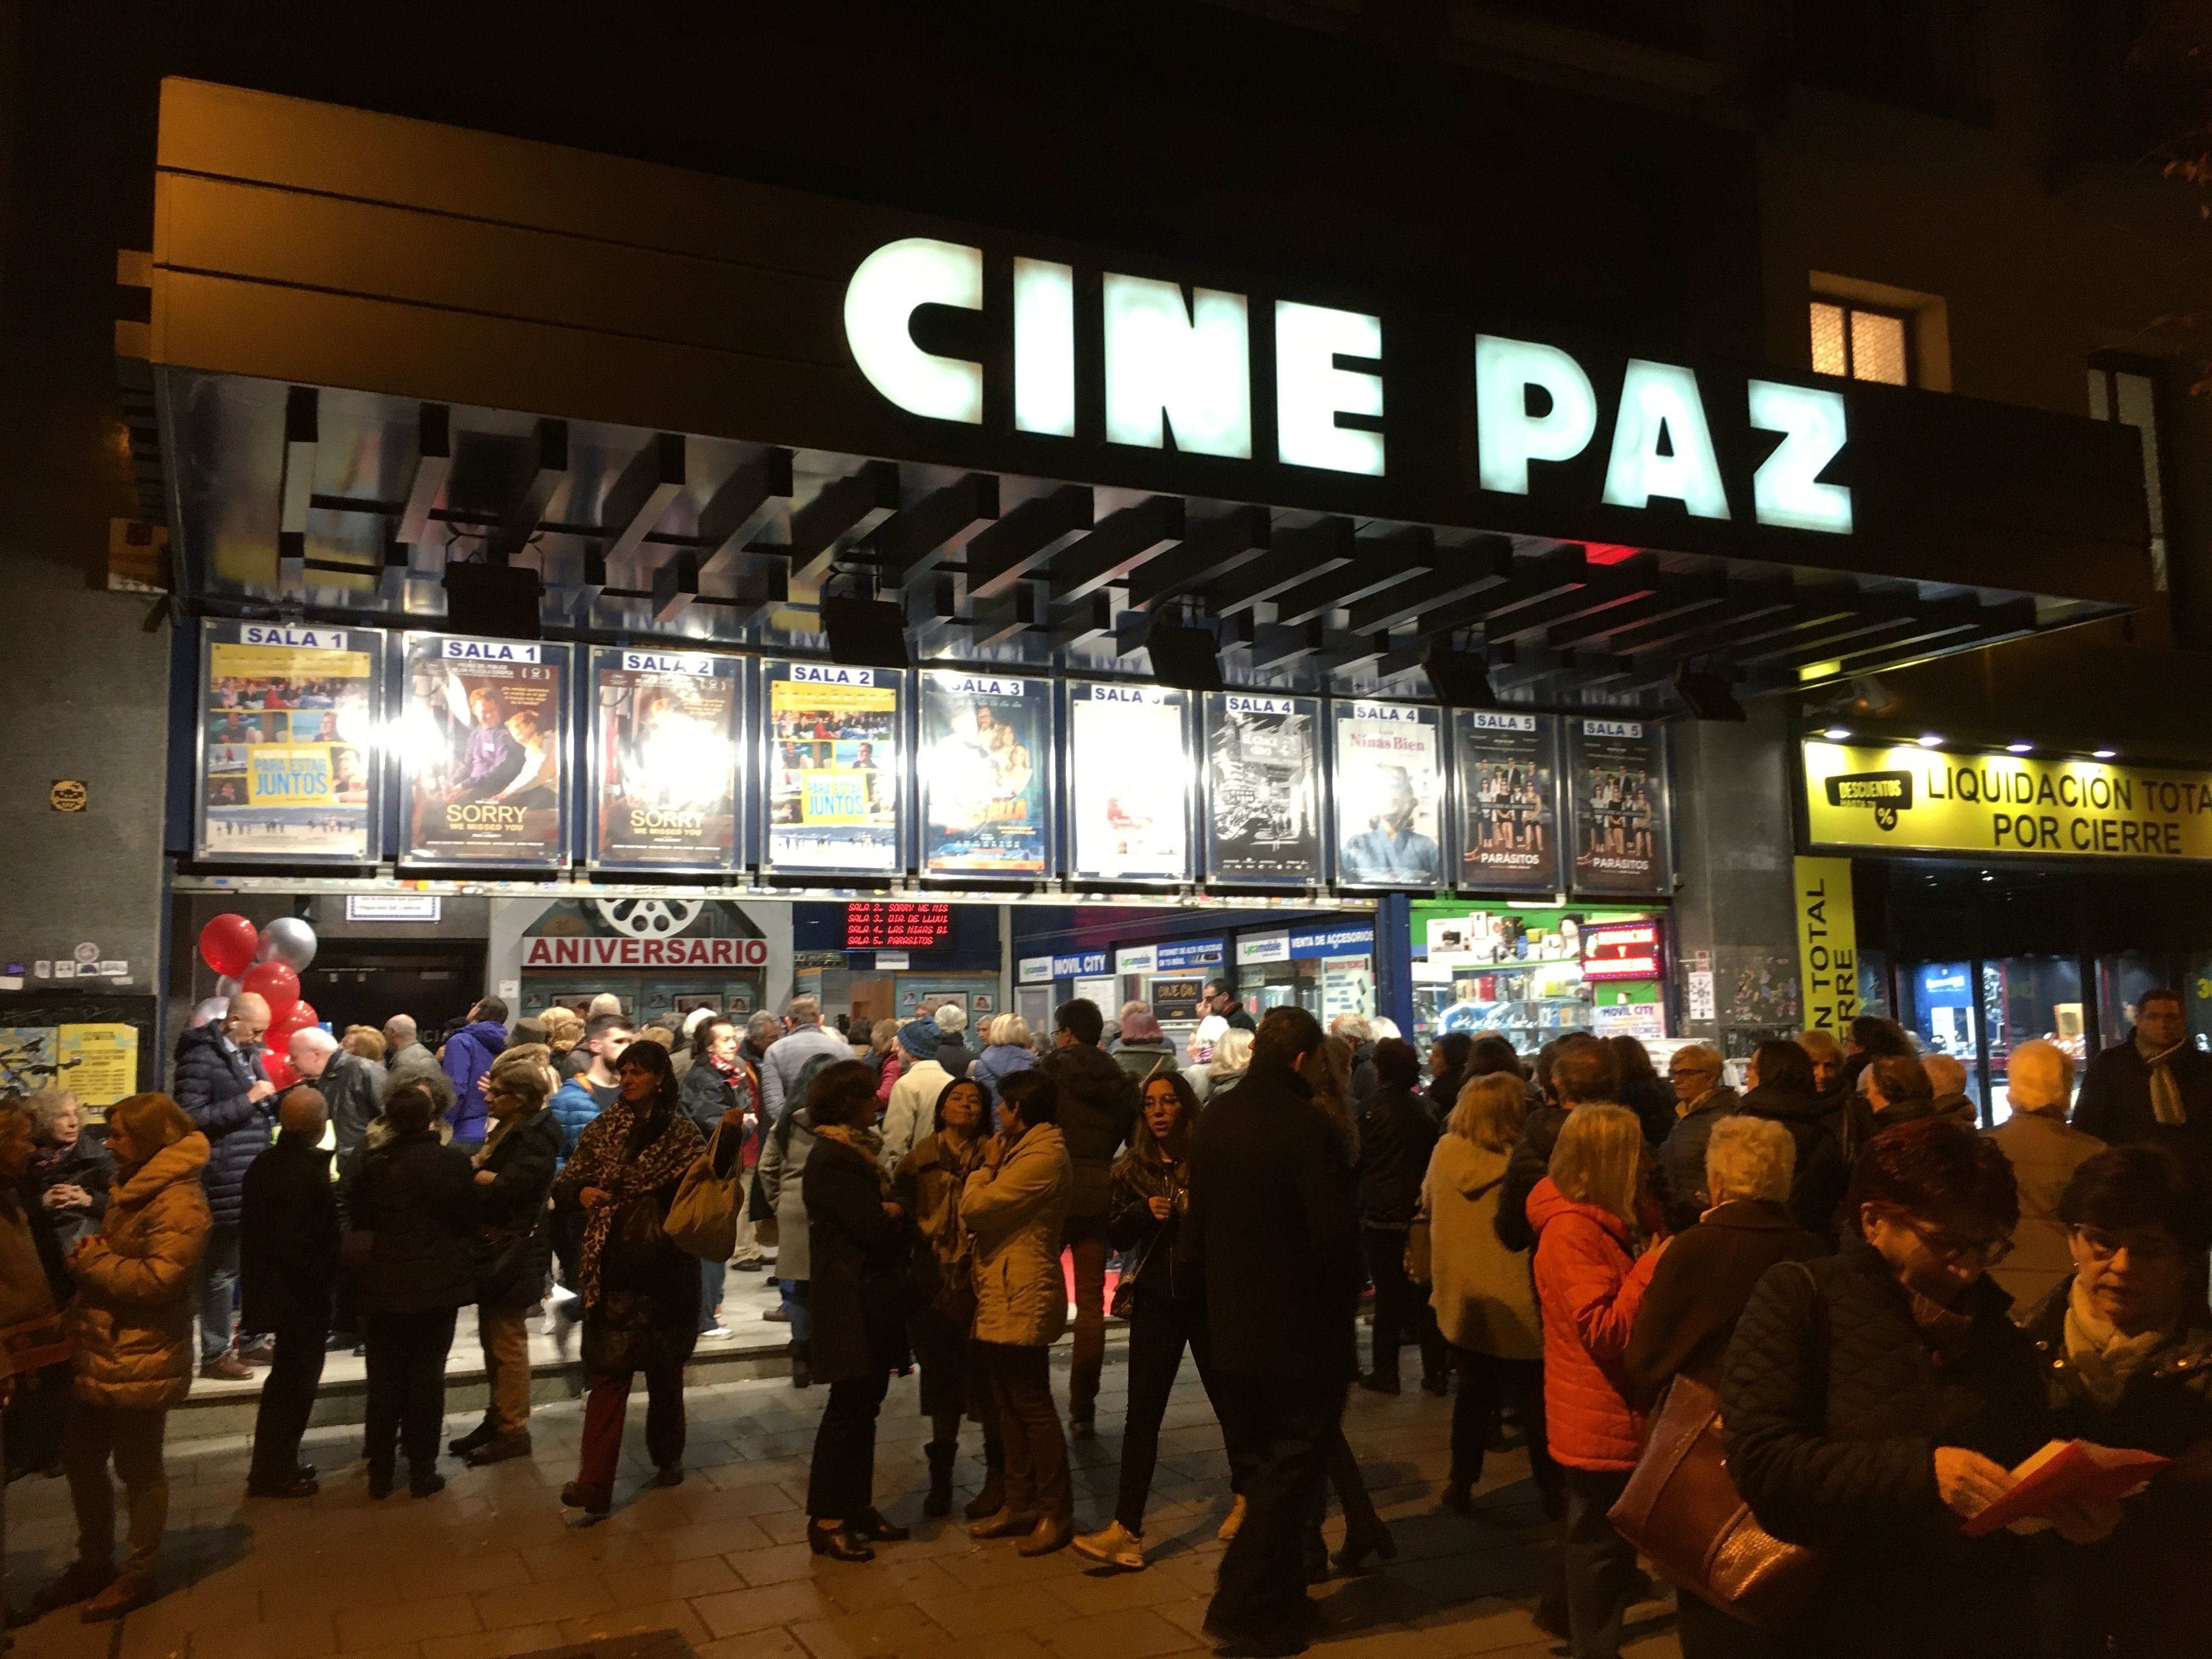 Una segunda vida para el mítico Cine Paz de Madrid